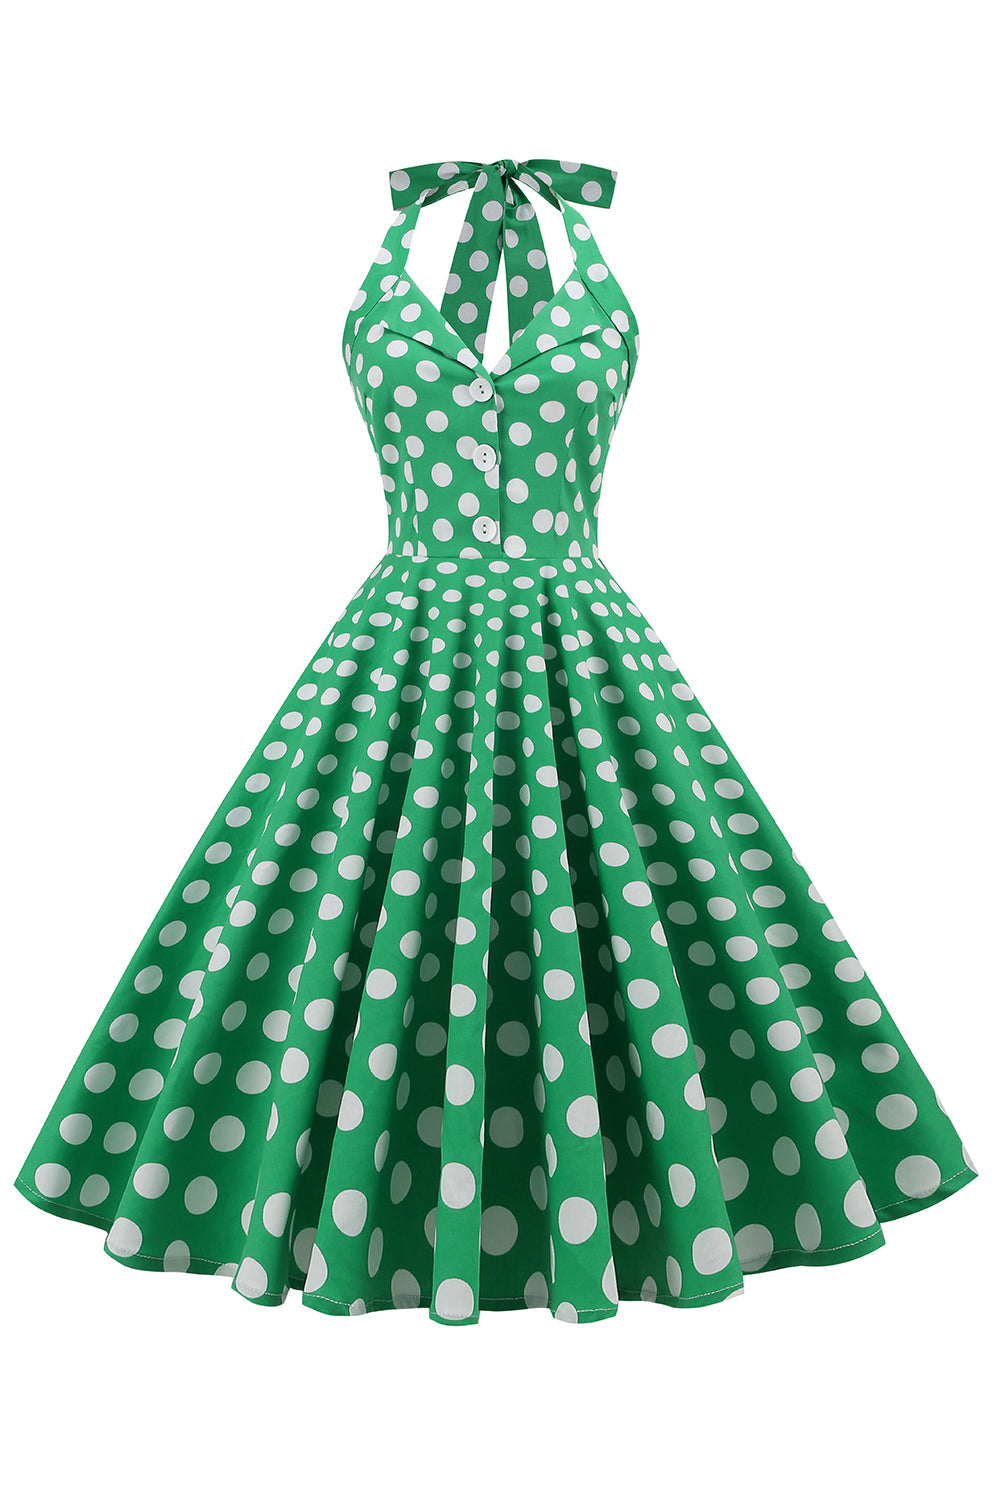 Grünes Neckholder Polka Dots Kleid aus den 1950er Jahren